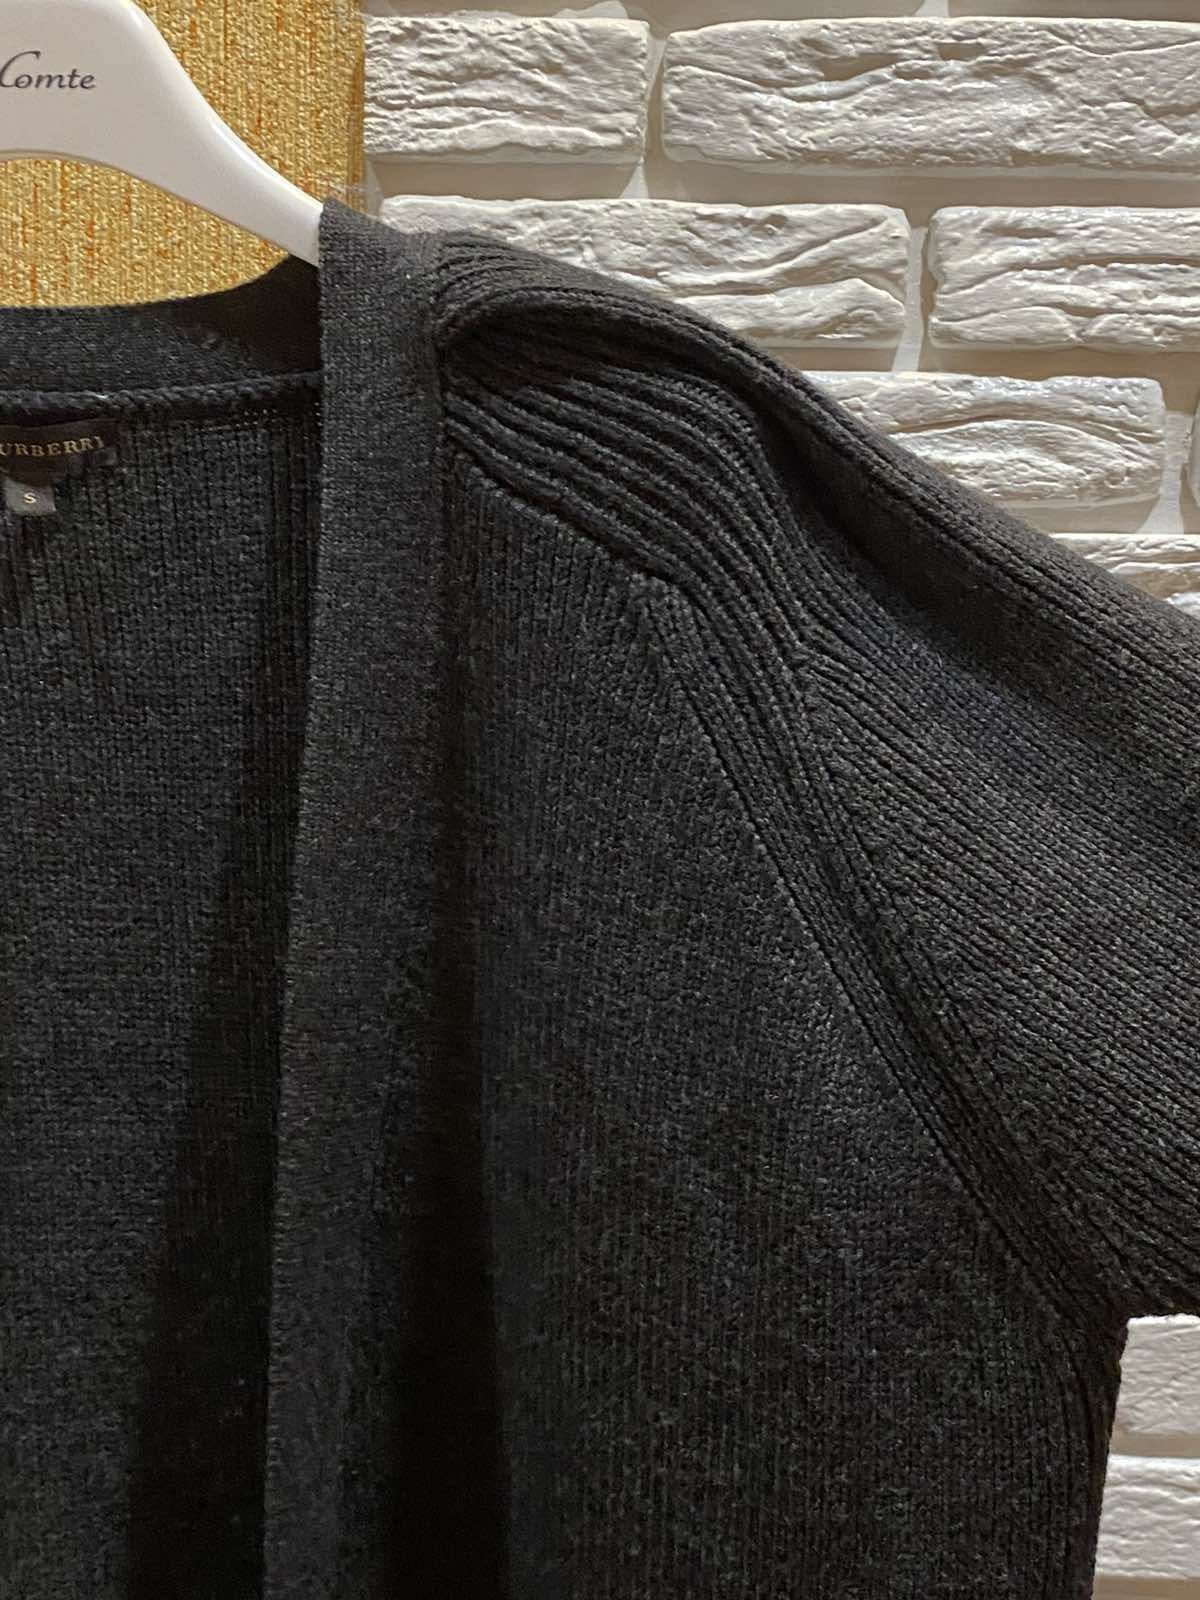 кардиган пальто свитер кофта шерсть burberry шарф в подарок